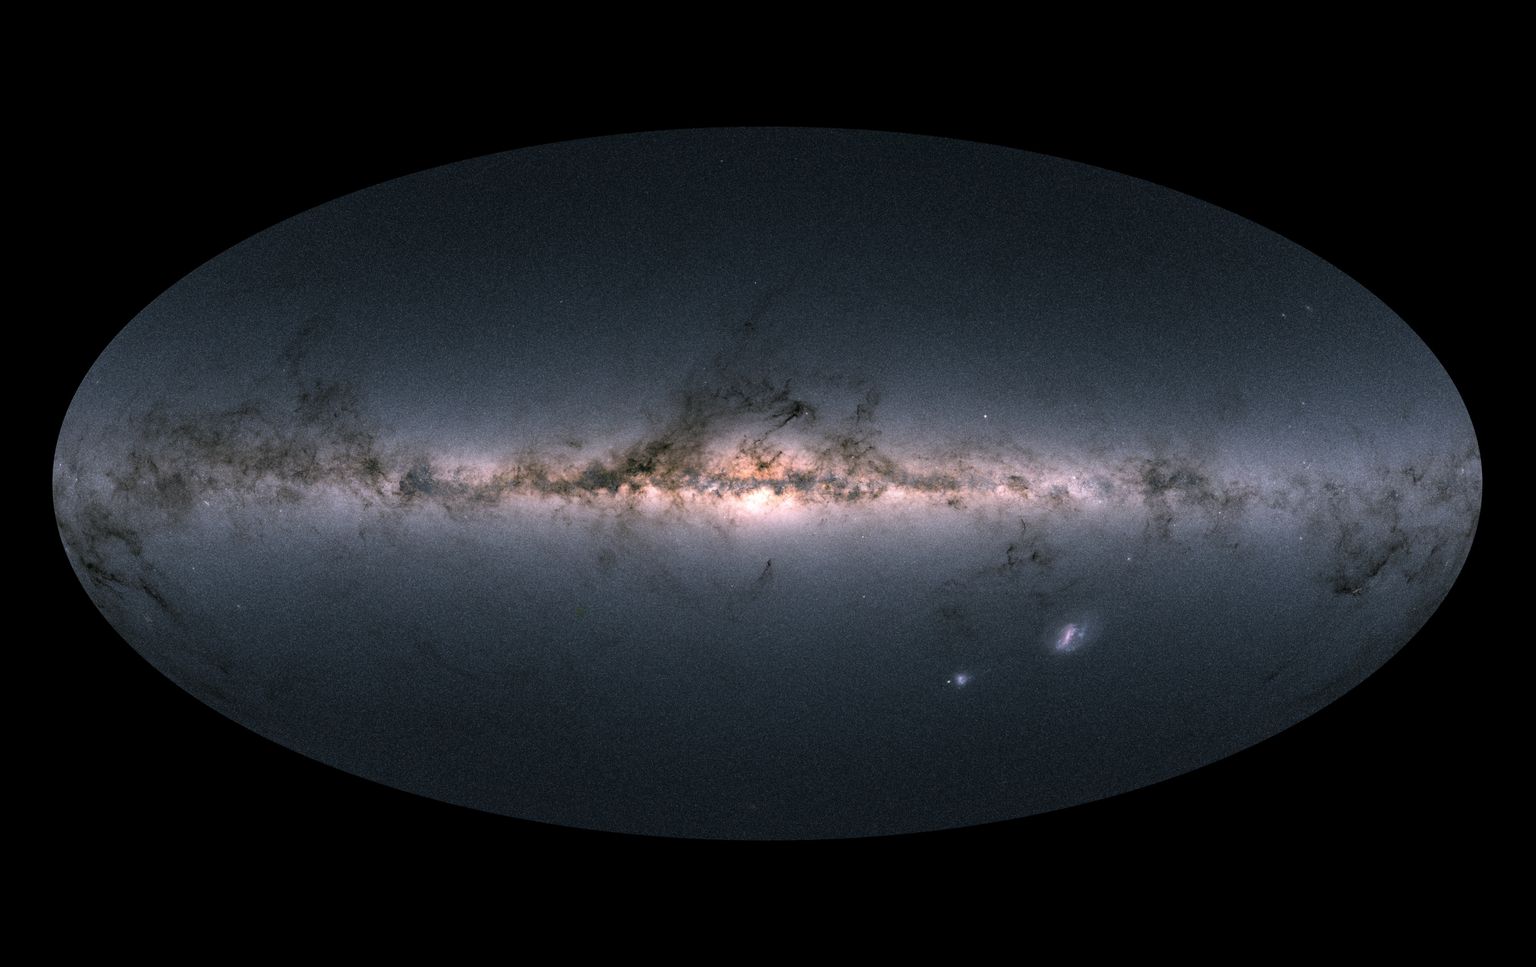 GAIA missiooni avaldatud pildil paistab Linnutee galaktika koos oma lähemate naabritega.